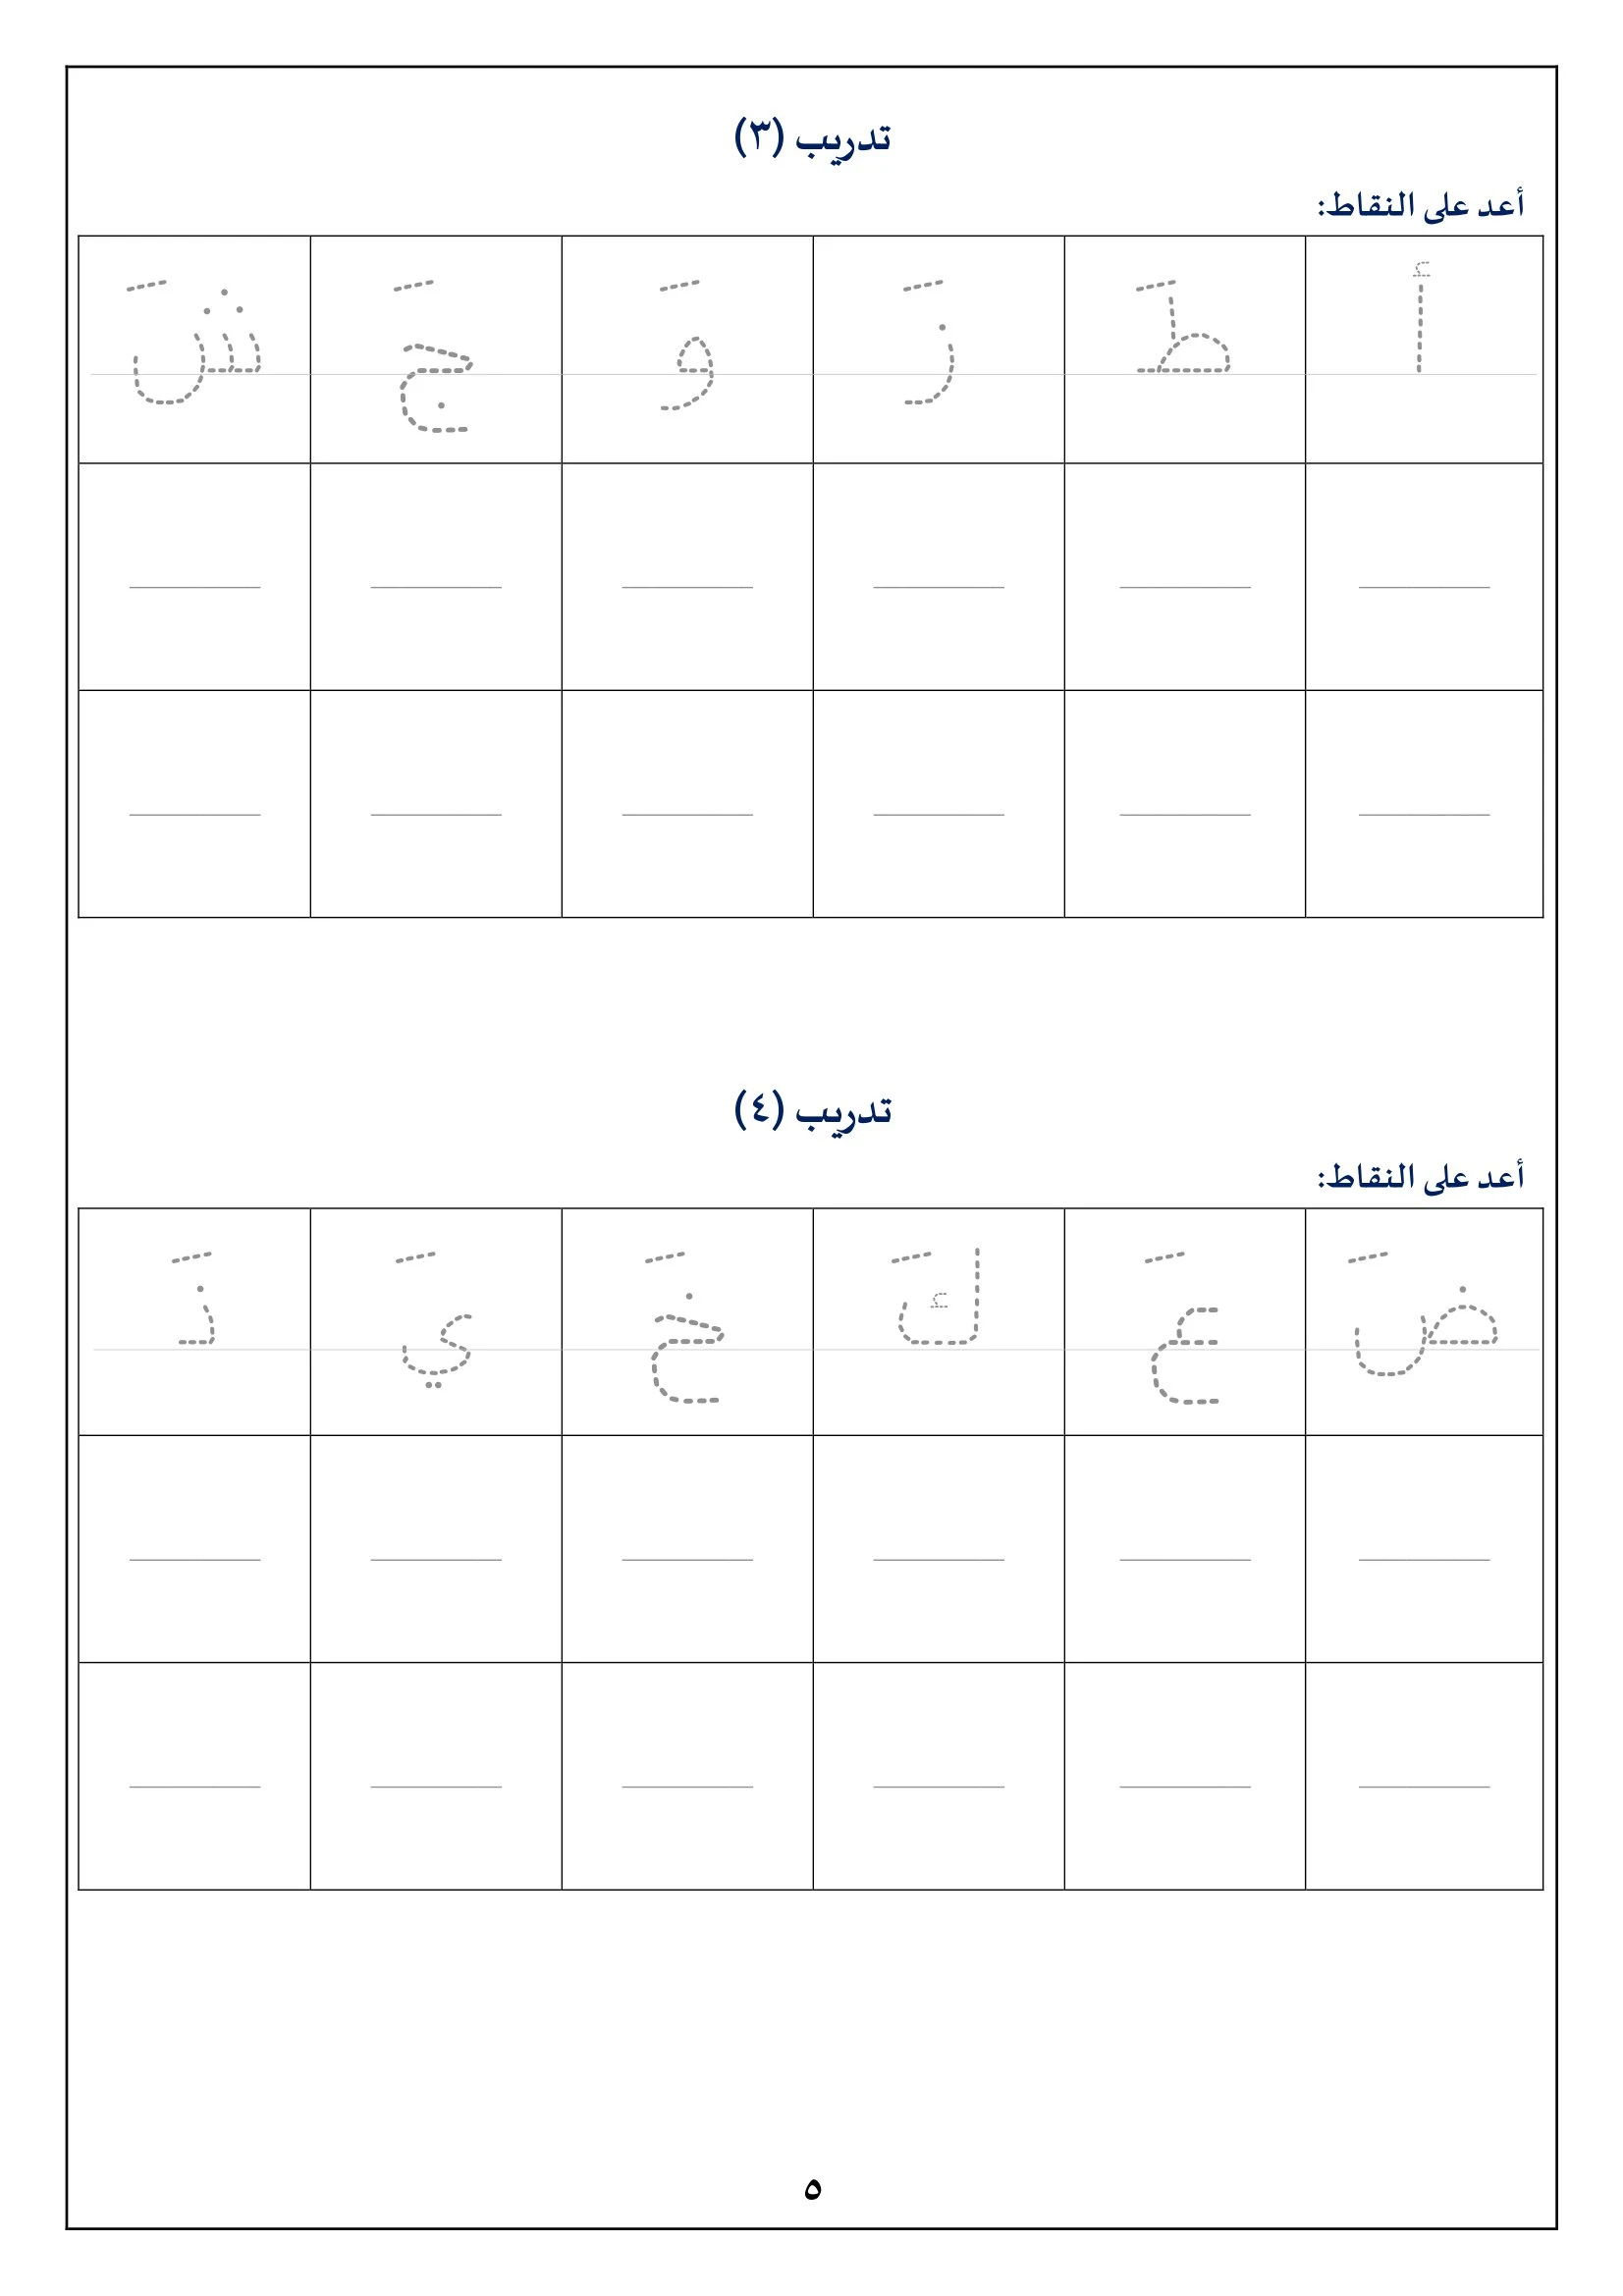 أوراق تدريبات على الحروف العربية بالفتح pdf تحميل مباشر مجاني